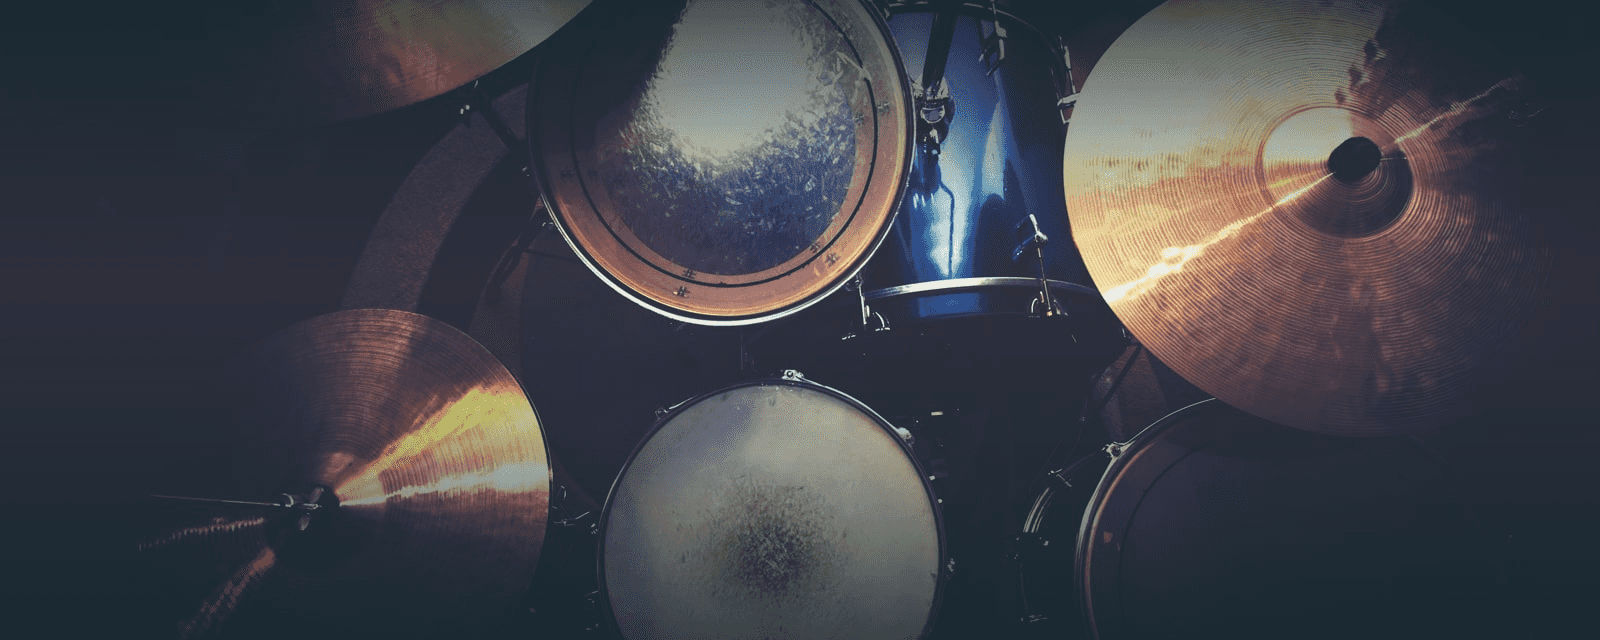 Schlagzeug und Rhythmik